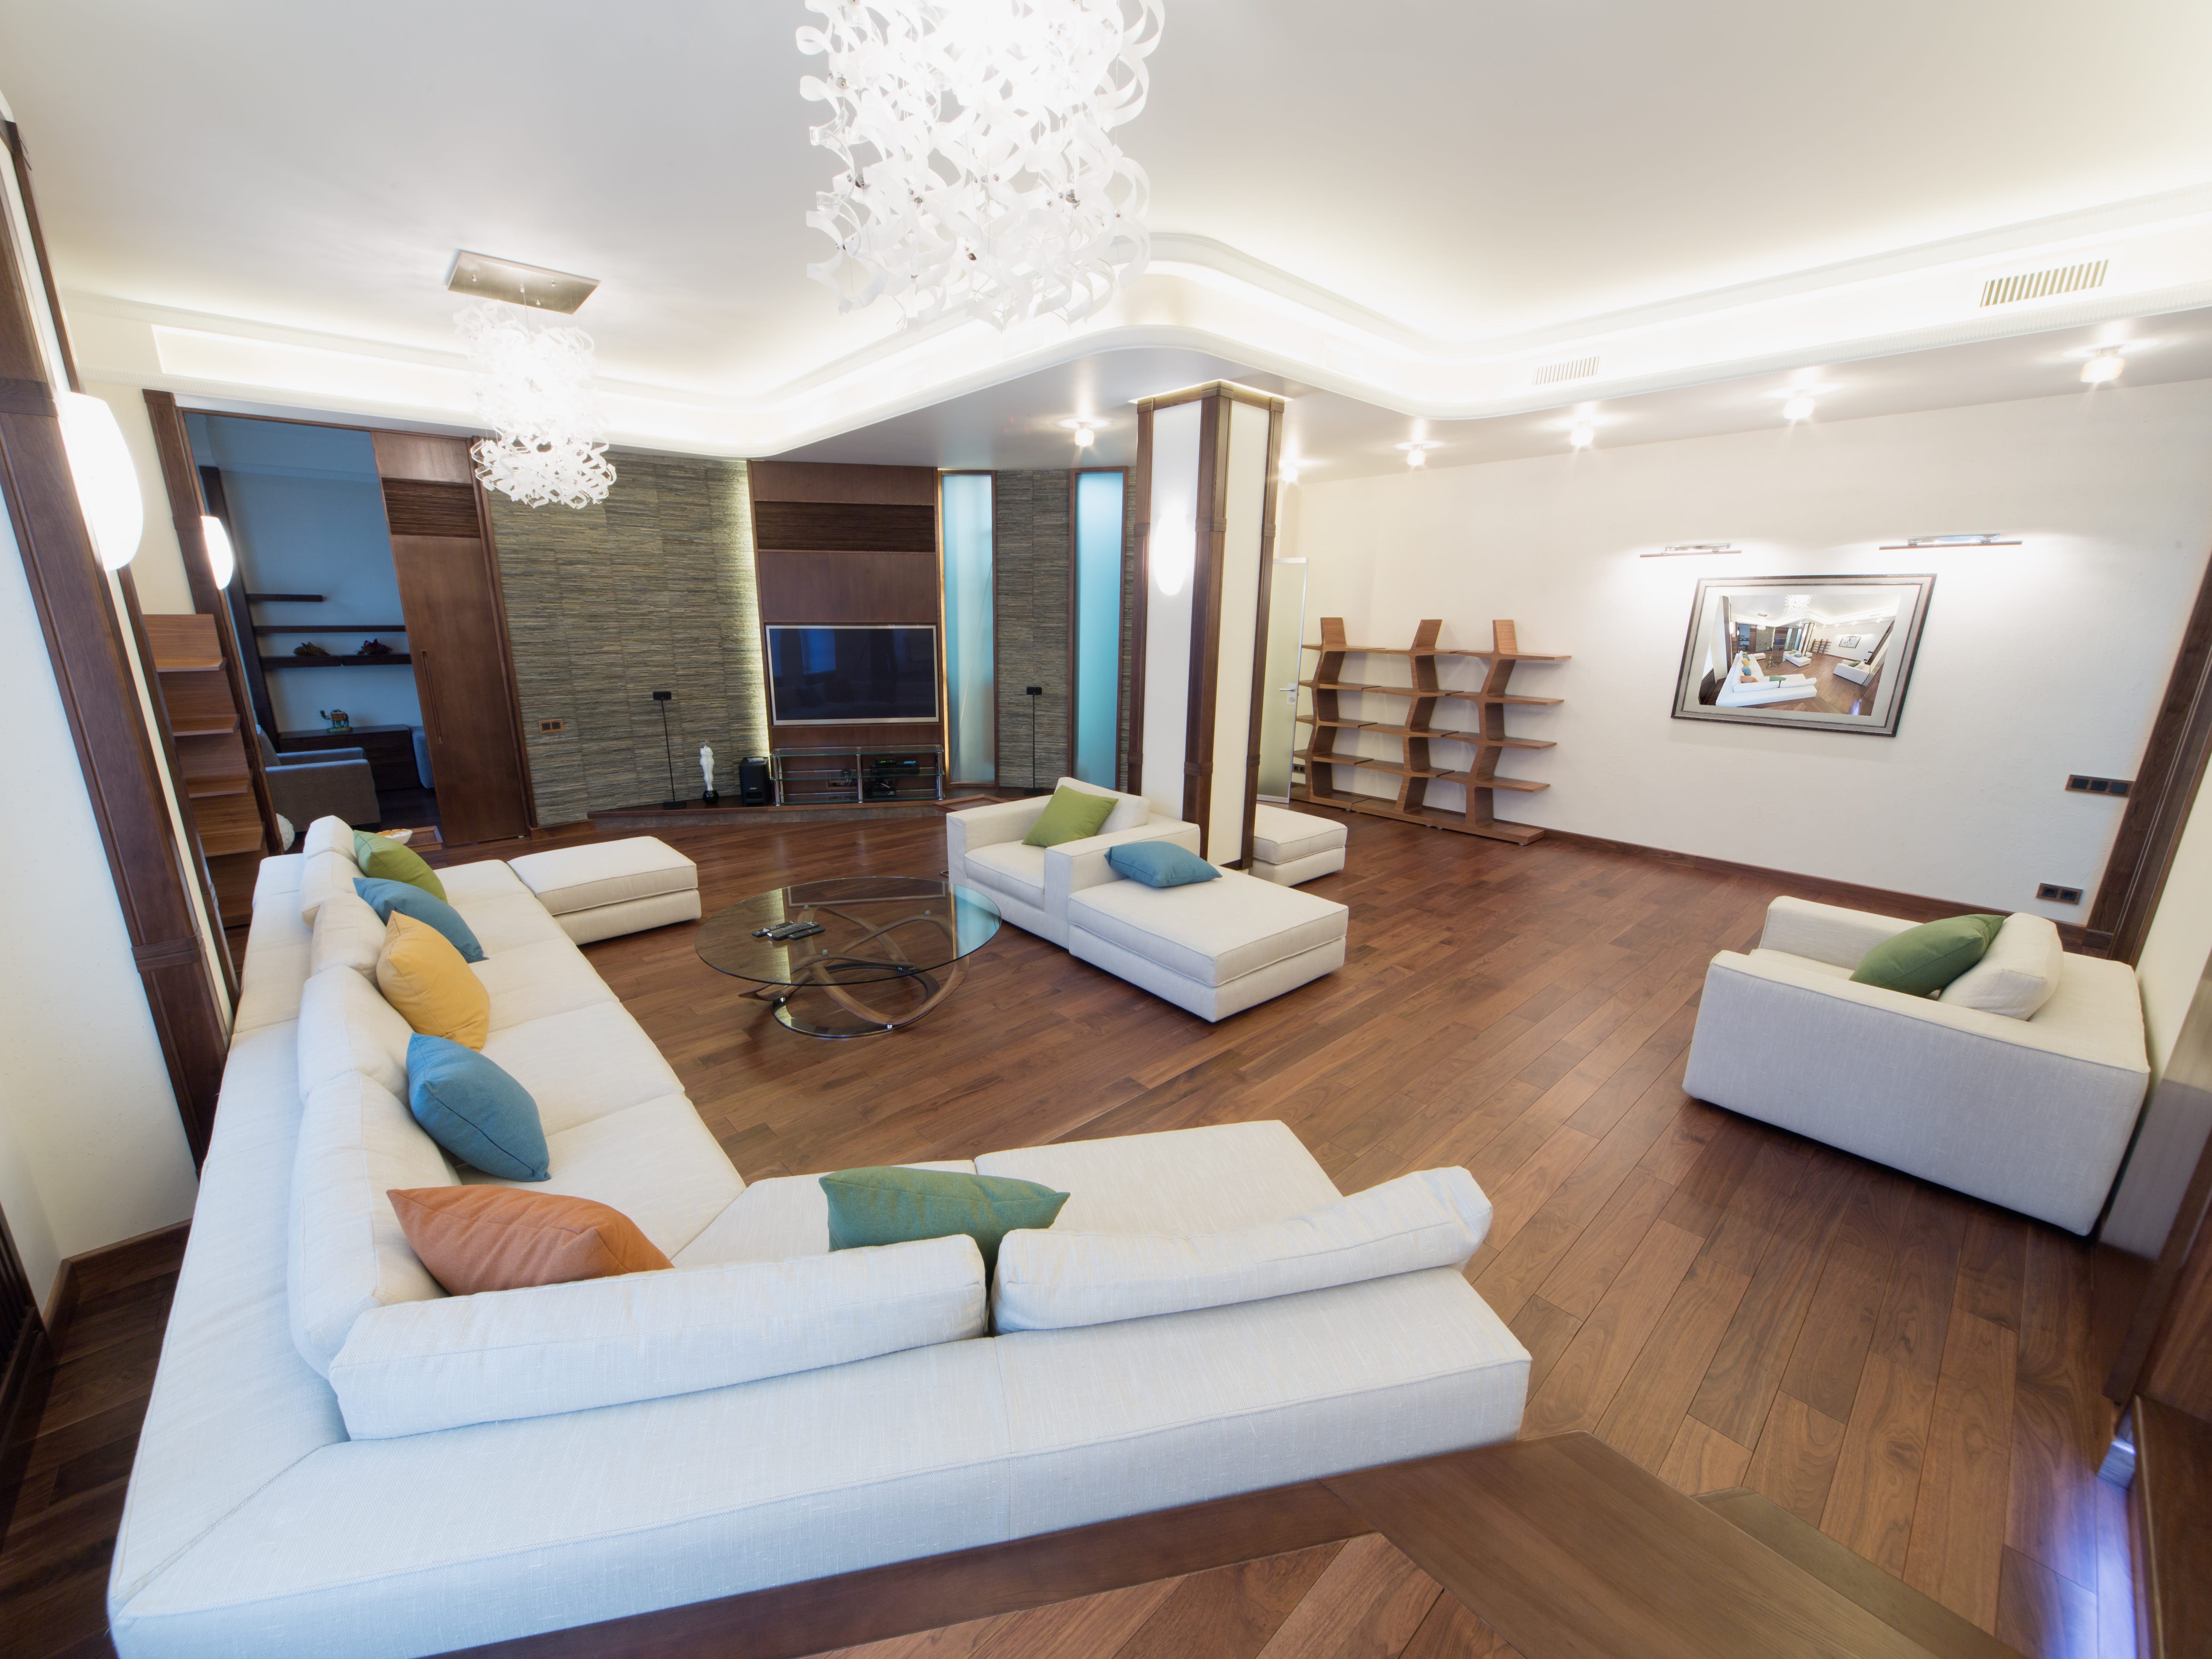 Wohnzimmer mit Holzboden, weißem Sofa und Stühlen, einem Kronleuchter und mehreren Lichtern an der Wand